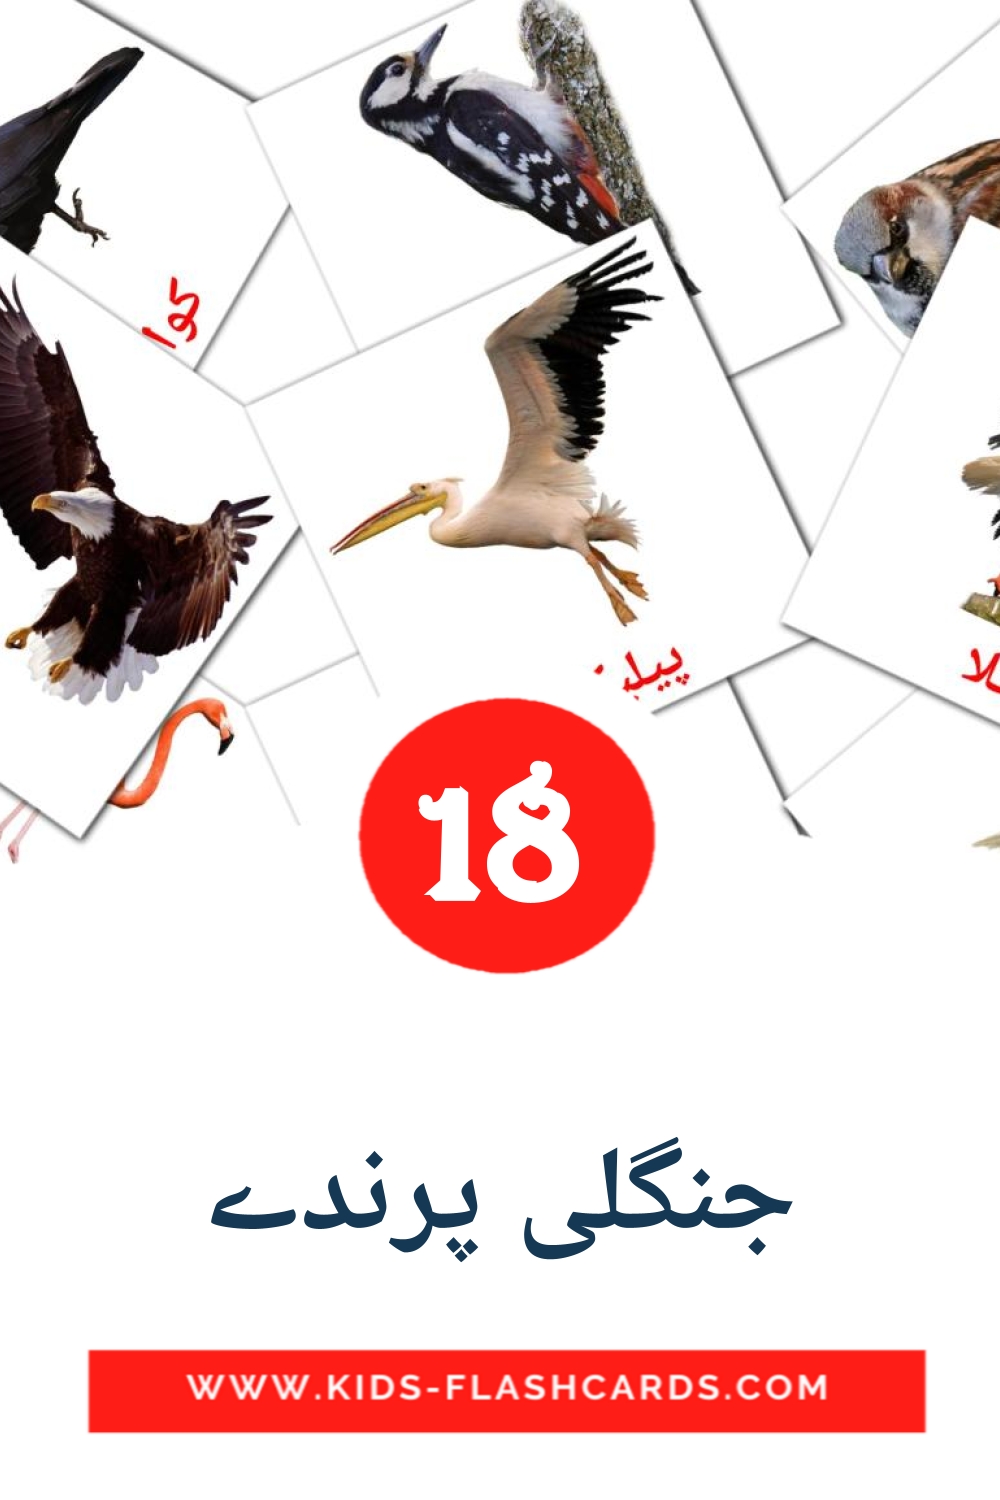 18 cartes illustrées de جنگلی پرندے pour la maternelle en ourdou